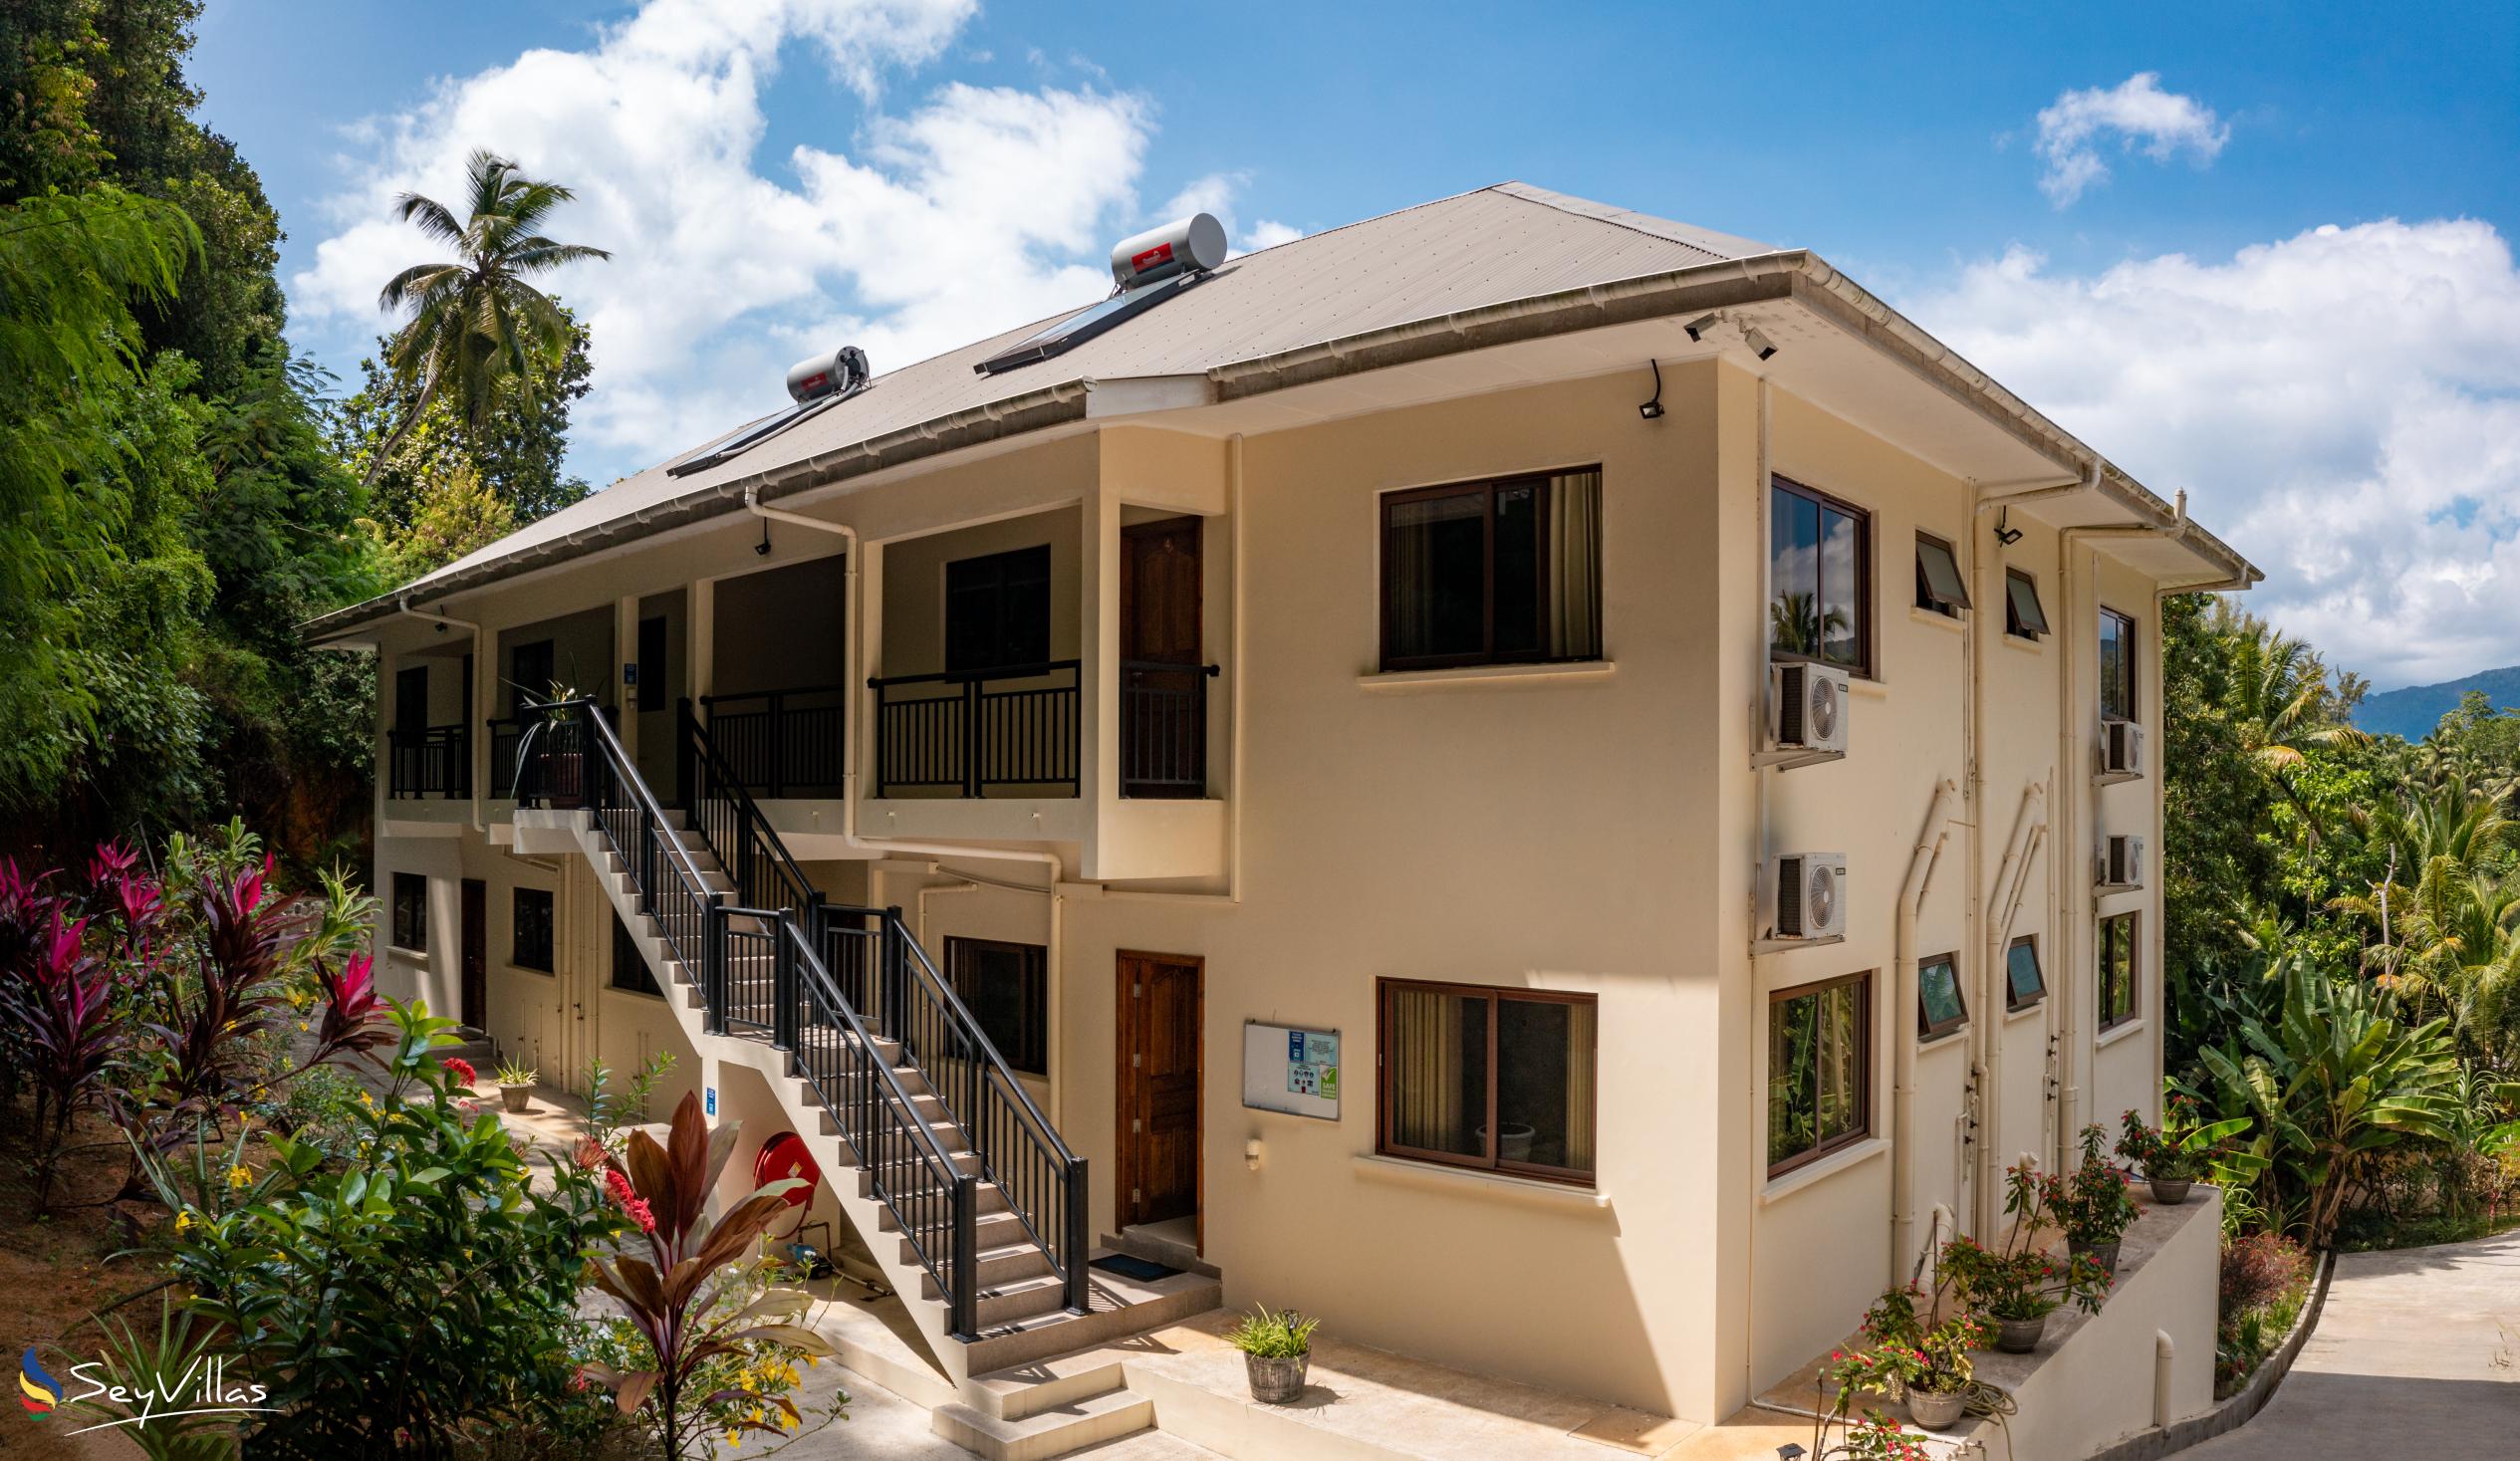 Foto 1: Kanasuk Self Catering Apartments - Aussenbereich - Mahé (Seychellen)